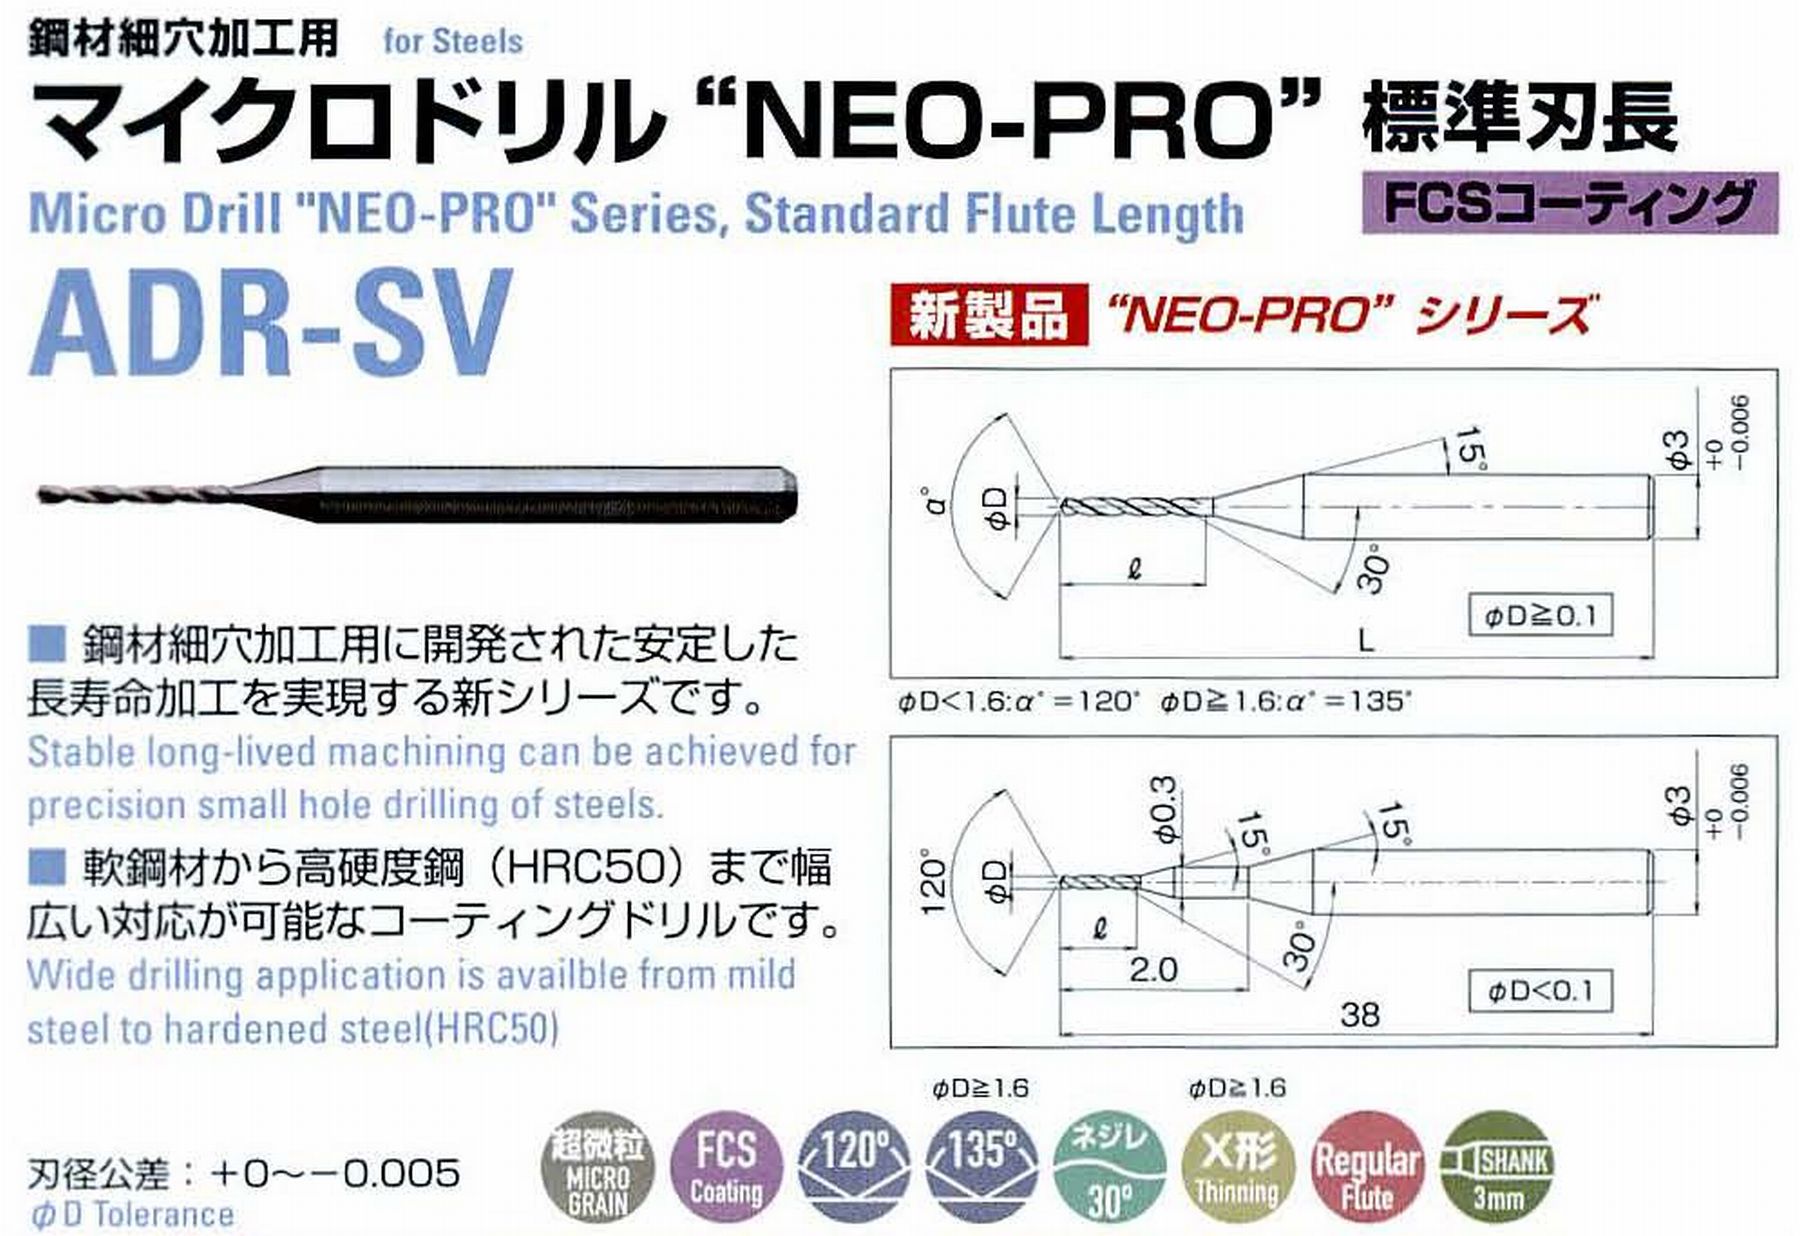 ATOM アトム サイトウ製作所 マイクロドリル NEO-PRO標準刃長 ADR-SV-0008 径0.08 刃長0.8 全長38 シャンク3mm